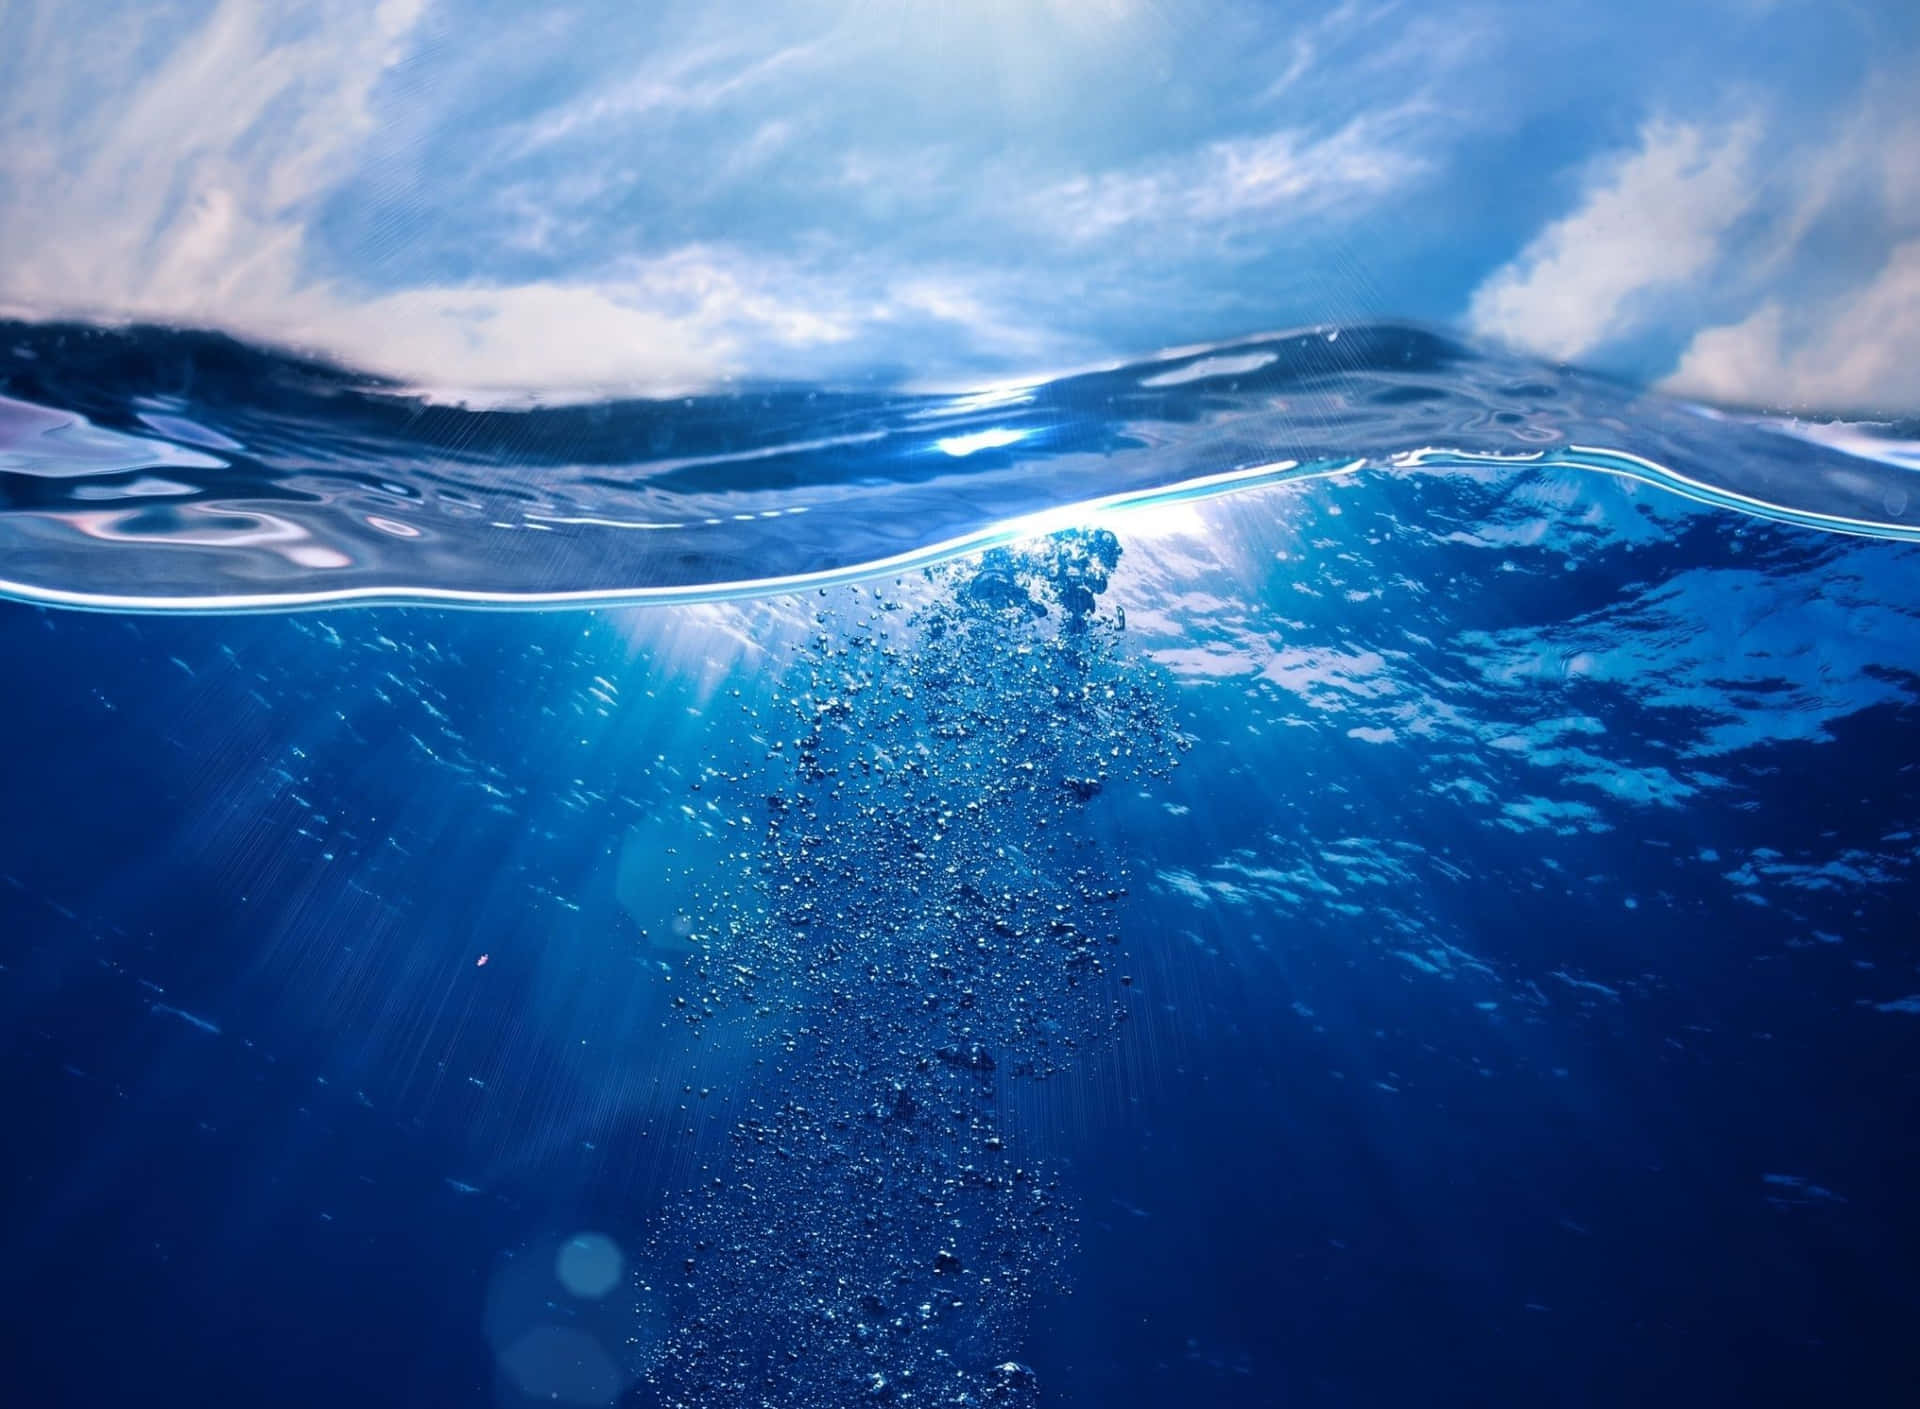 Unavista Impresionante Del Océano En Un Brillante Tono Azul